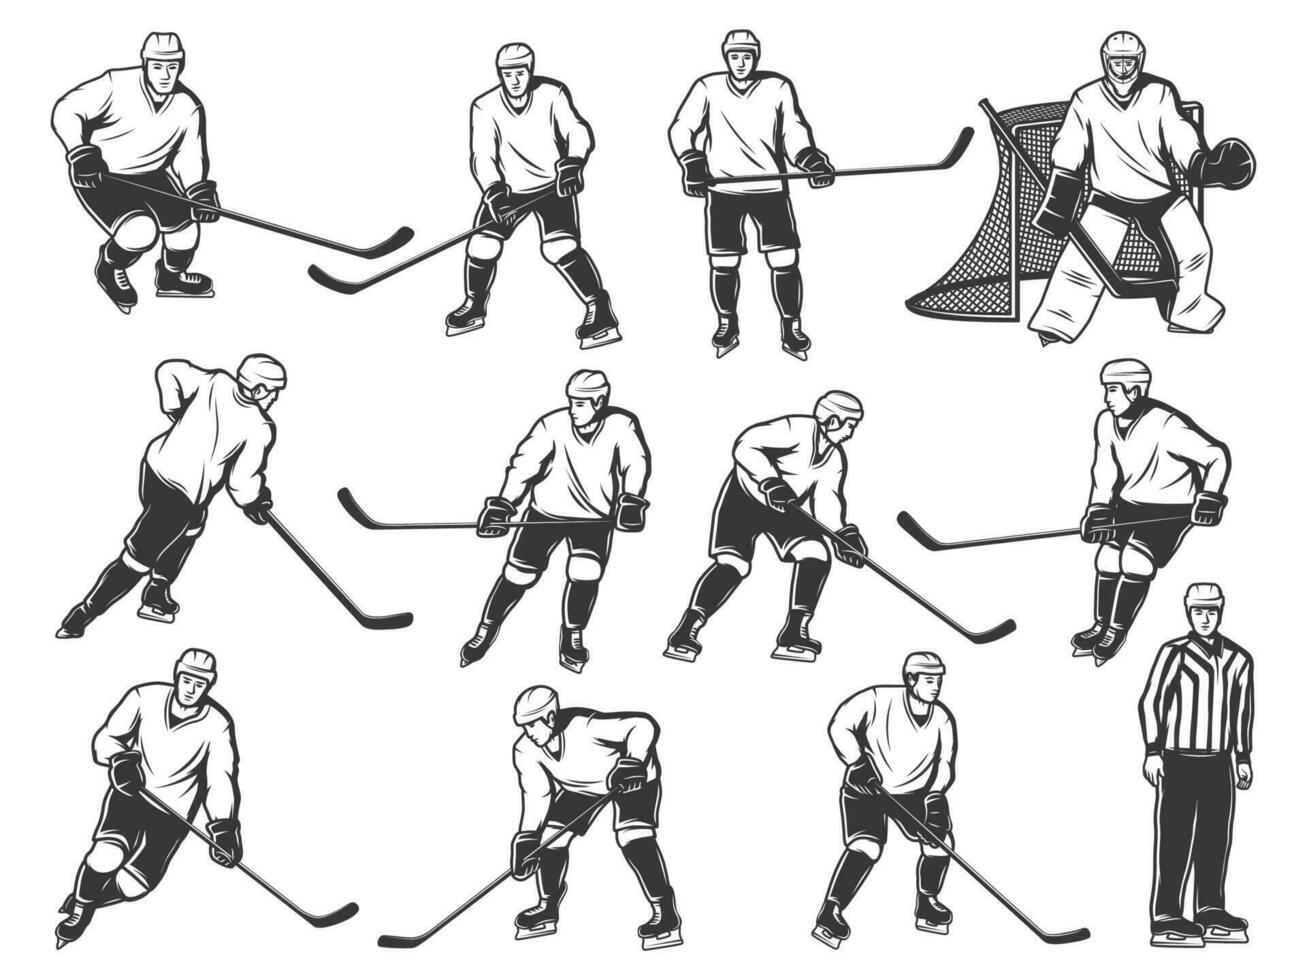 is hockey spelare, sport team och domare på rink vektor